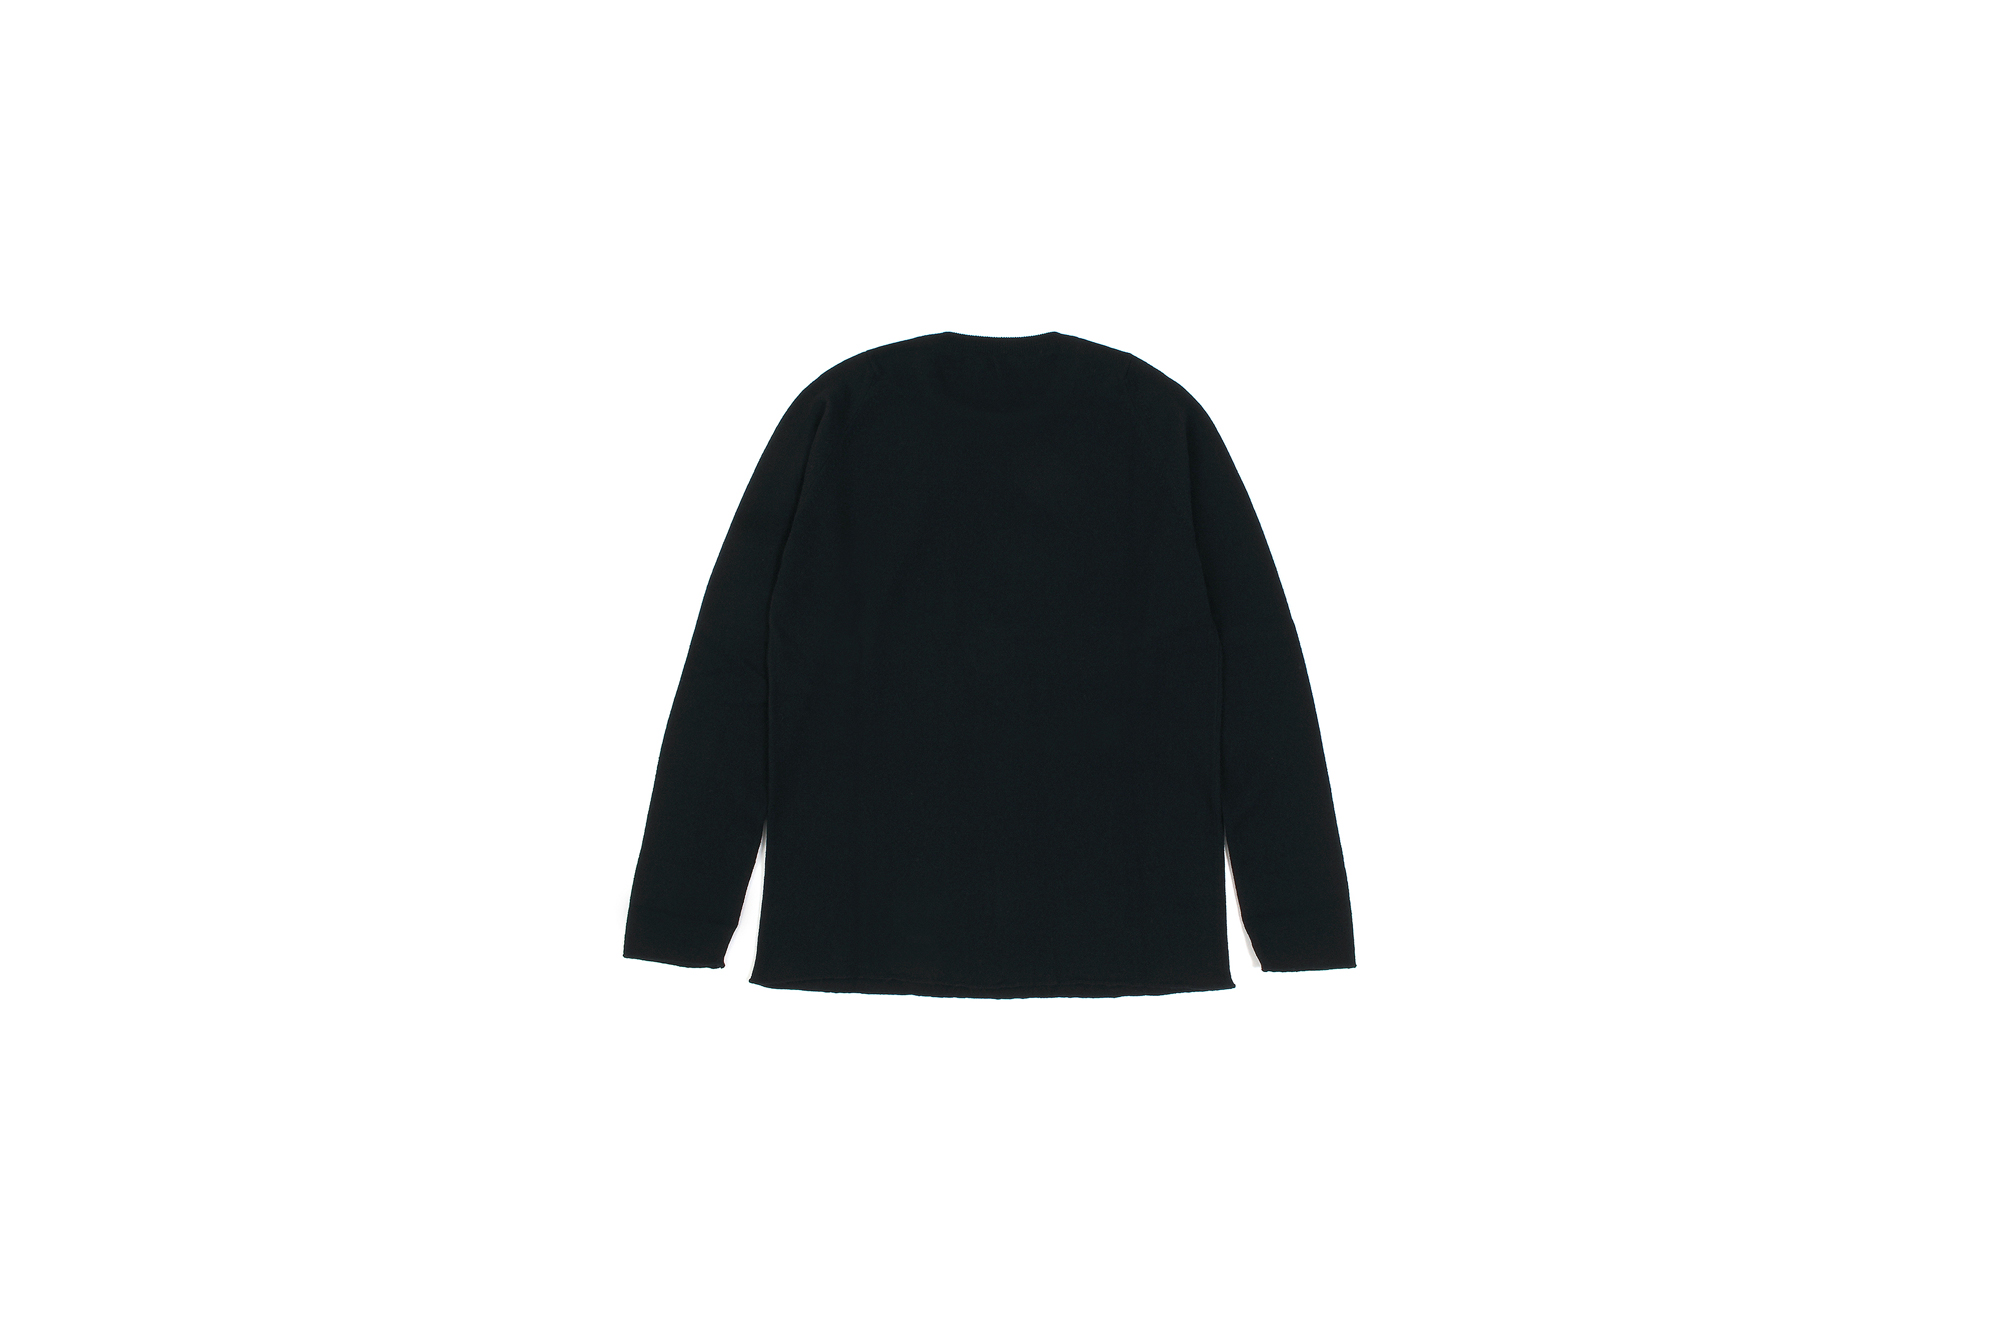 lucien pellat-finet(ルシアン ペラフィネ) KISS Skull Cashmere Sweater (キッス スカル カシミア セーター) インターシャ カシミア スカル セーター BLACK × NIVEOUS (ブラック × ホワイト) made in scotland (スコットランド製) 2020 春夏新作 愛知 名古屋 altoediritto アルトエデリット